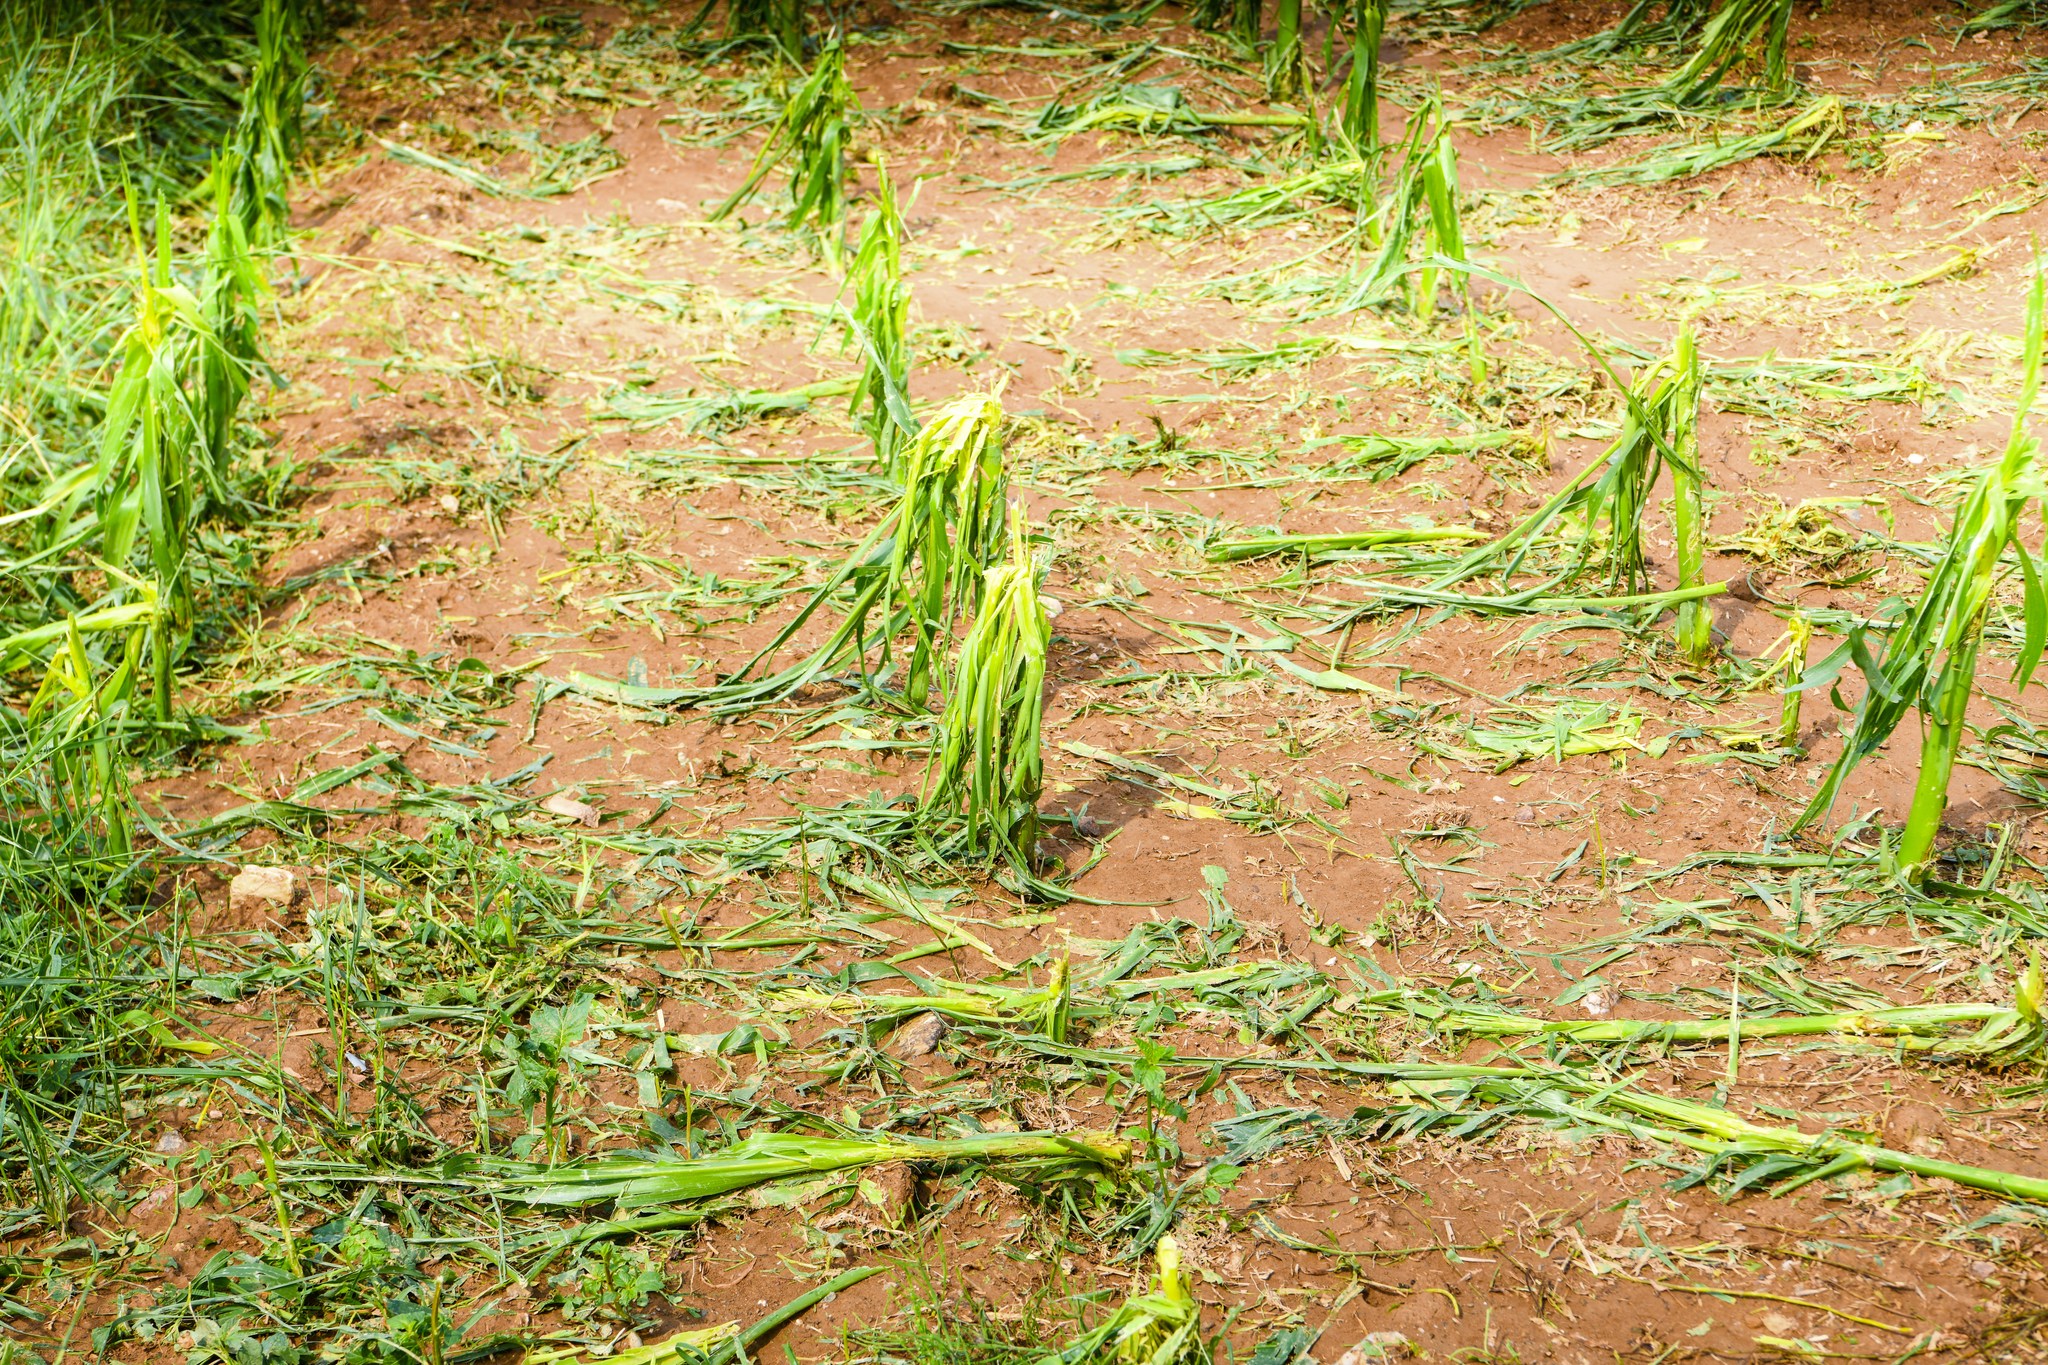  Ja çfarë dëme të mëdha u ka shkaktuar dje breshëri fermerëve llapjanë |FOTO